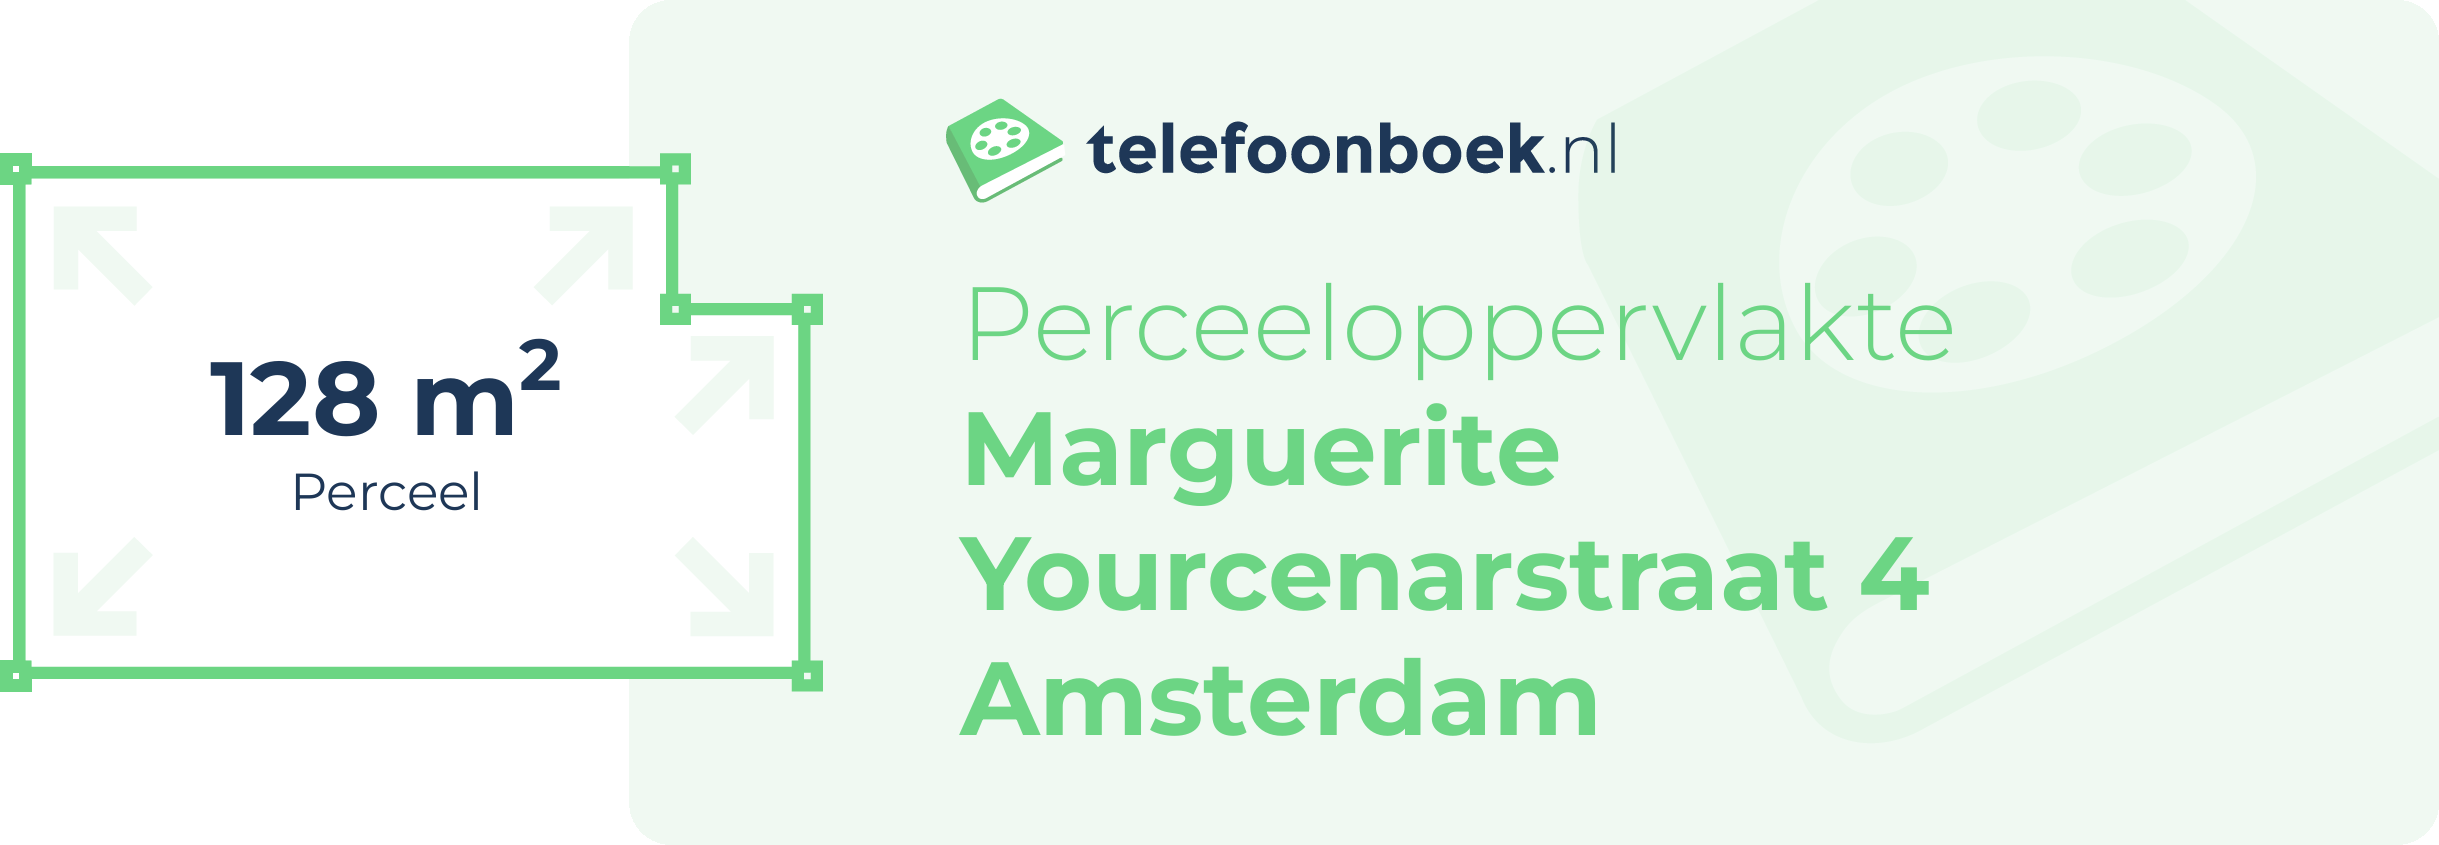 Perceeloppervlakte Marguerite Yourcenarstraat 4 Amsterdam